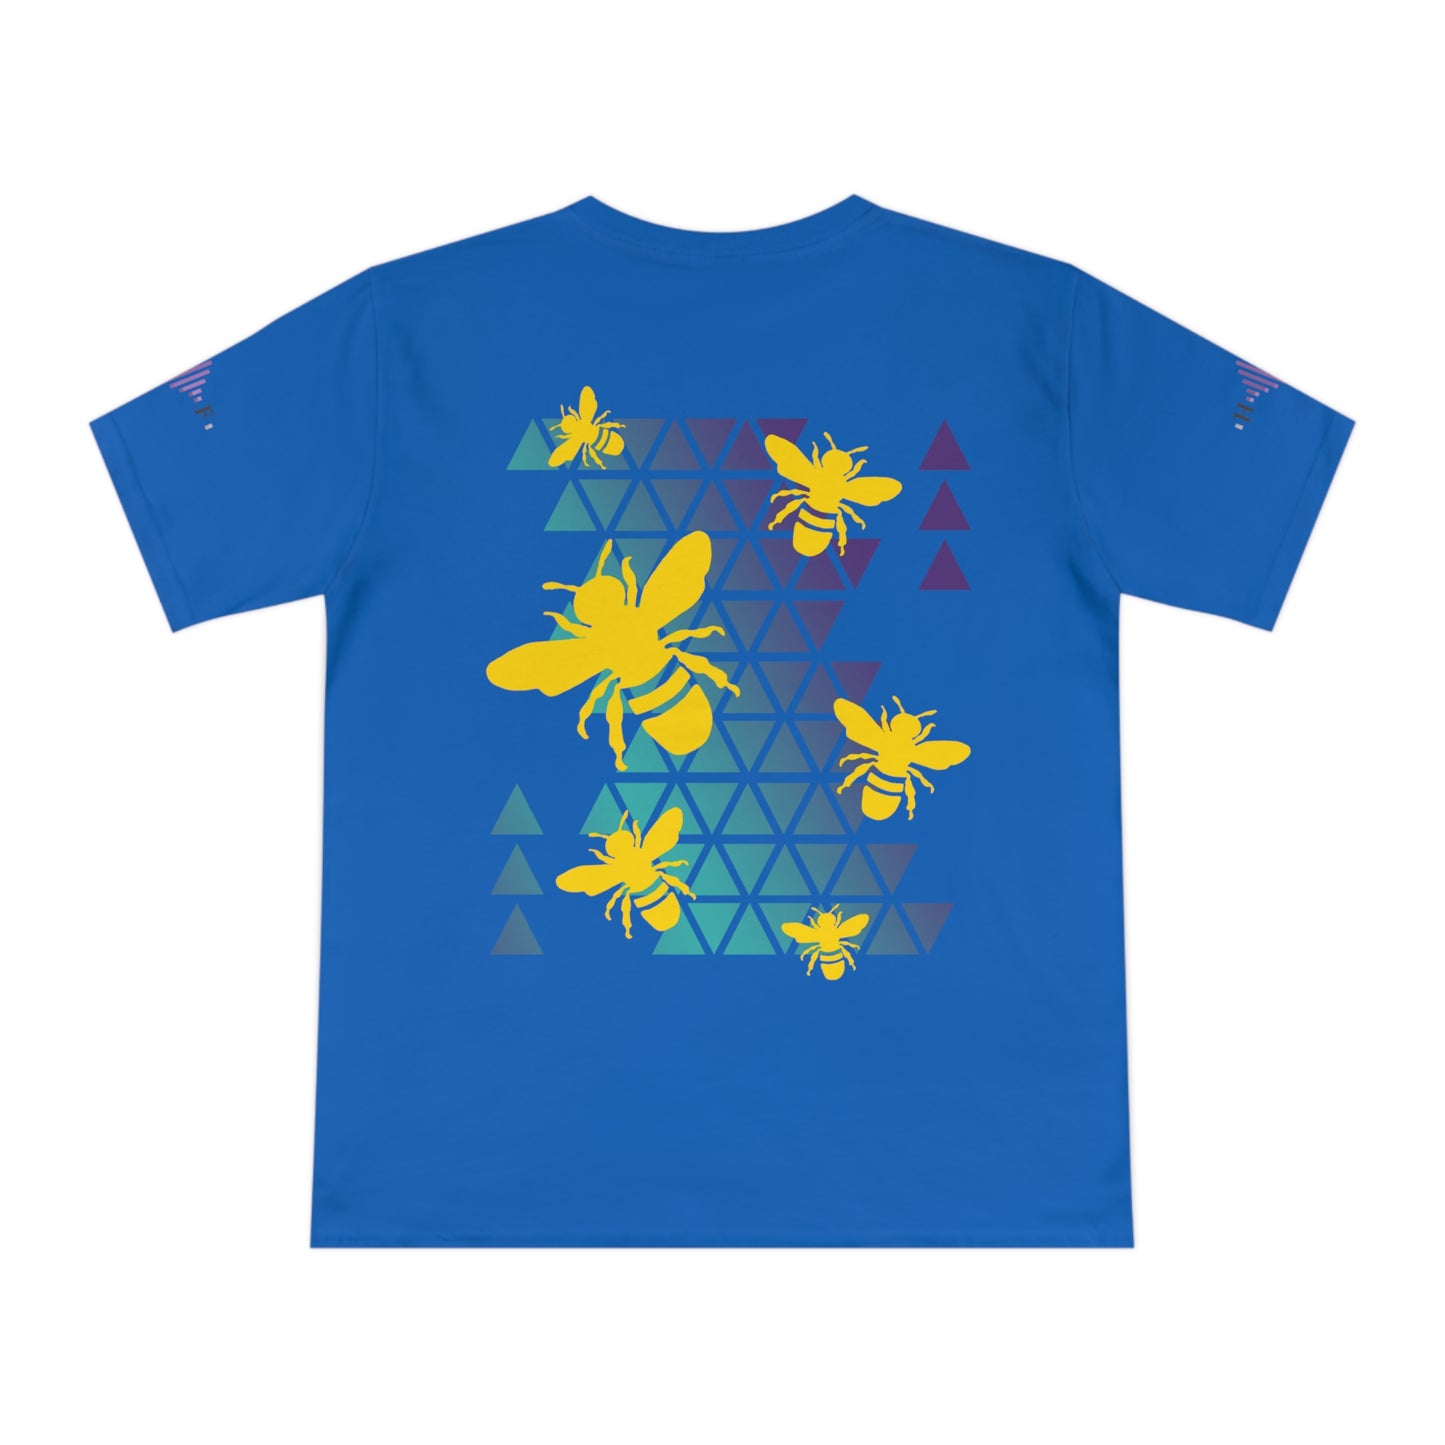 ORGANIC Golden Bees - Unisex Classic Jersey T-shirt